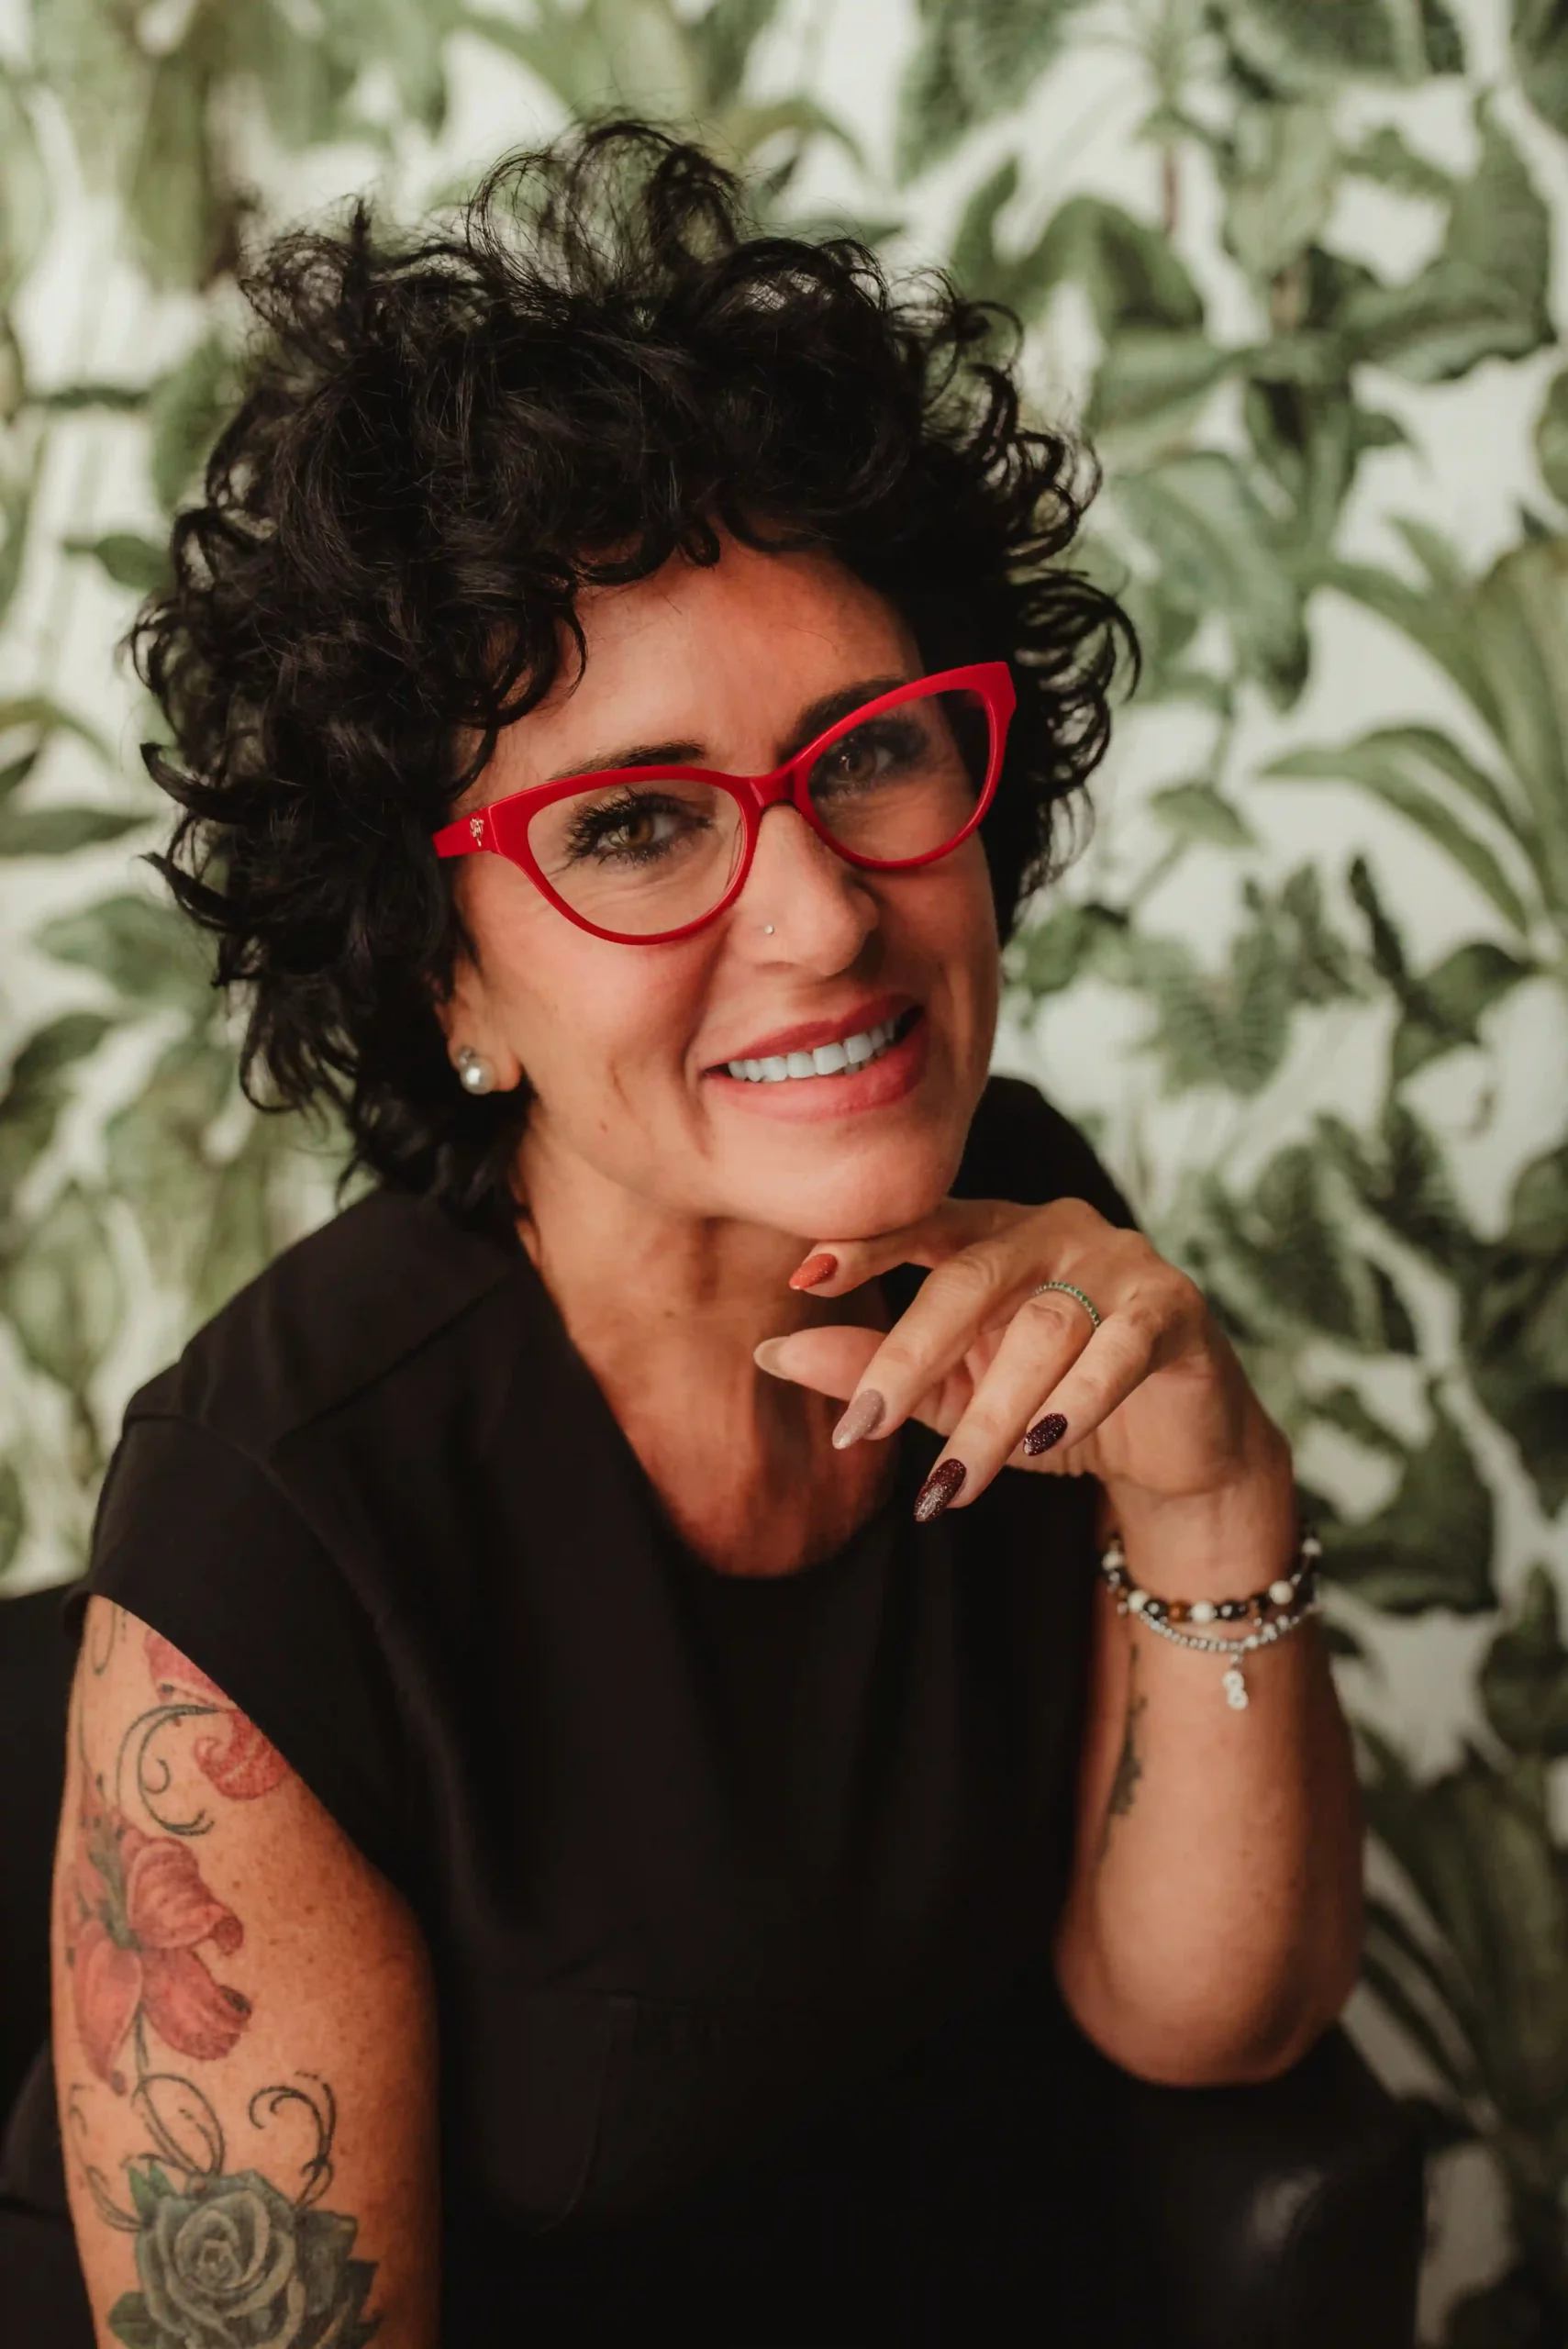 Foto ritratto business a colori donna tatuata che sorride con occhiali rossi e tiene la mano sotton il viso. Fotografia ritratto a colori Italia